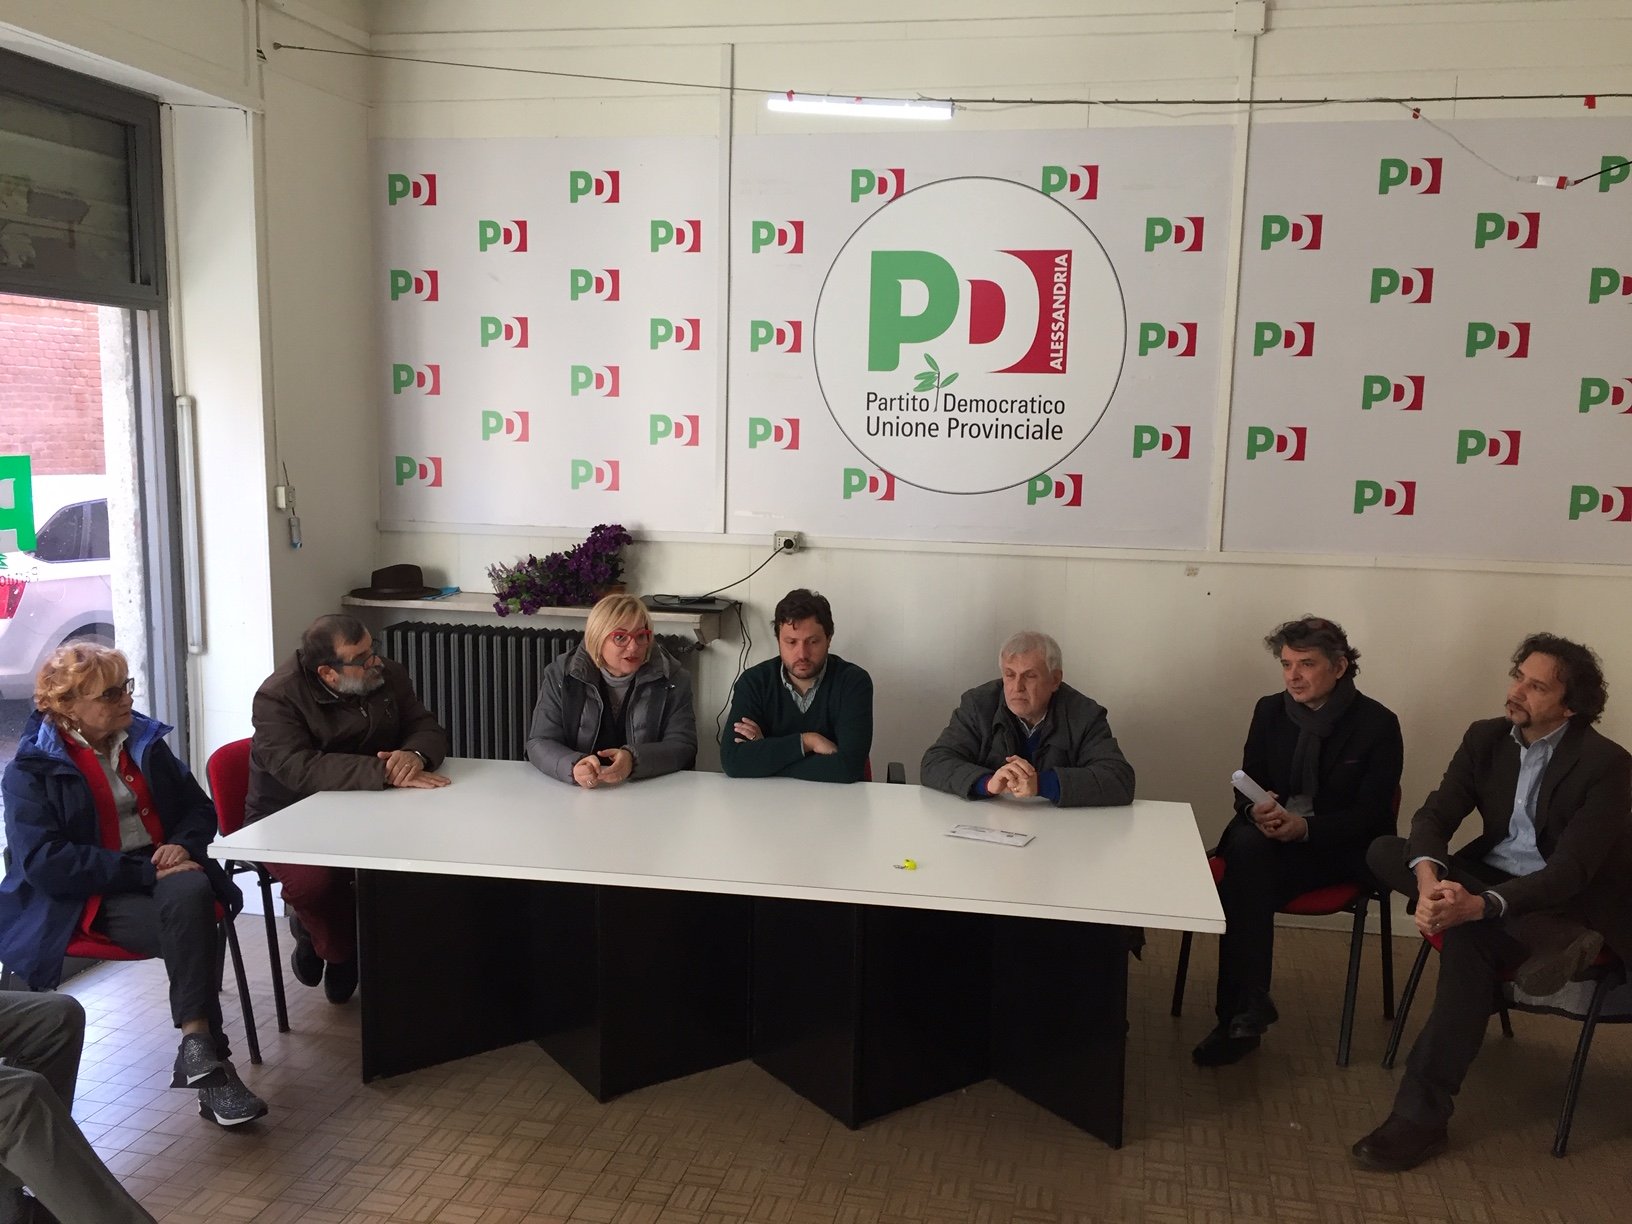 Pd: comitato Zingaretti per un nuovo centrosinistra. “Prima le persone”